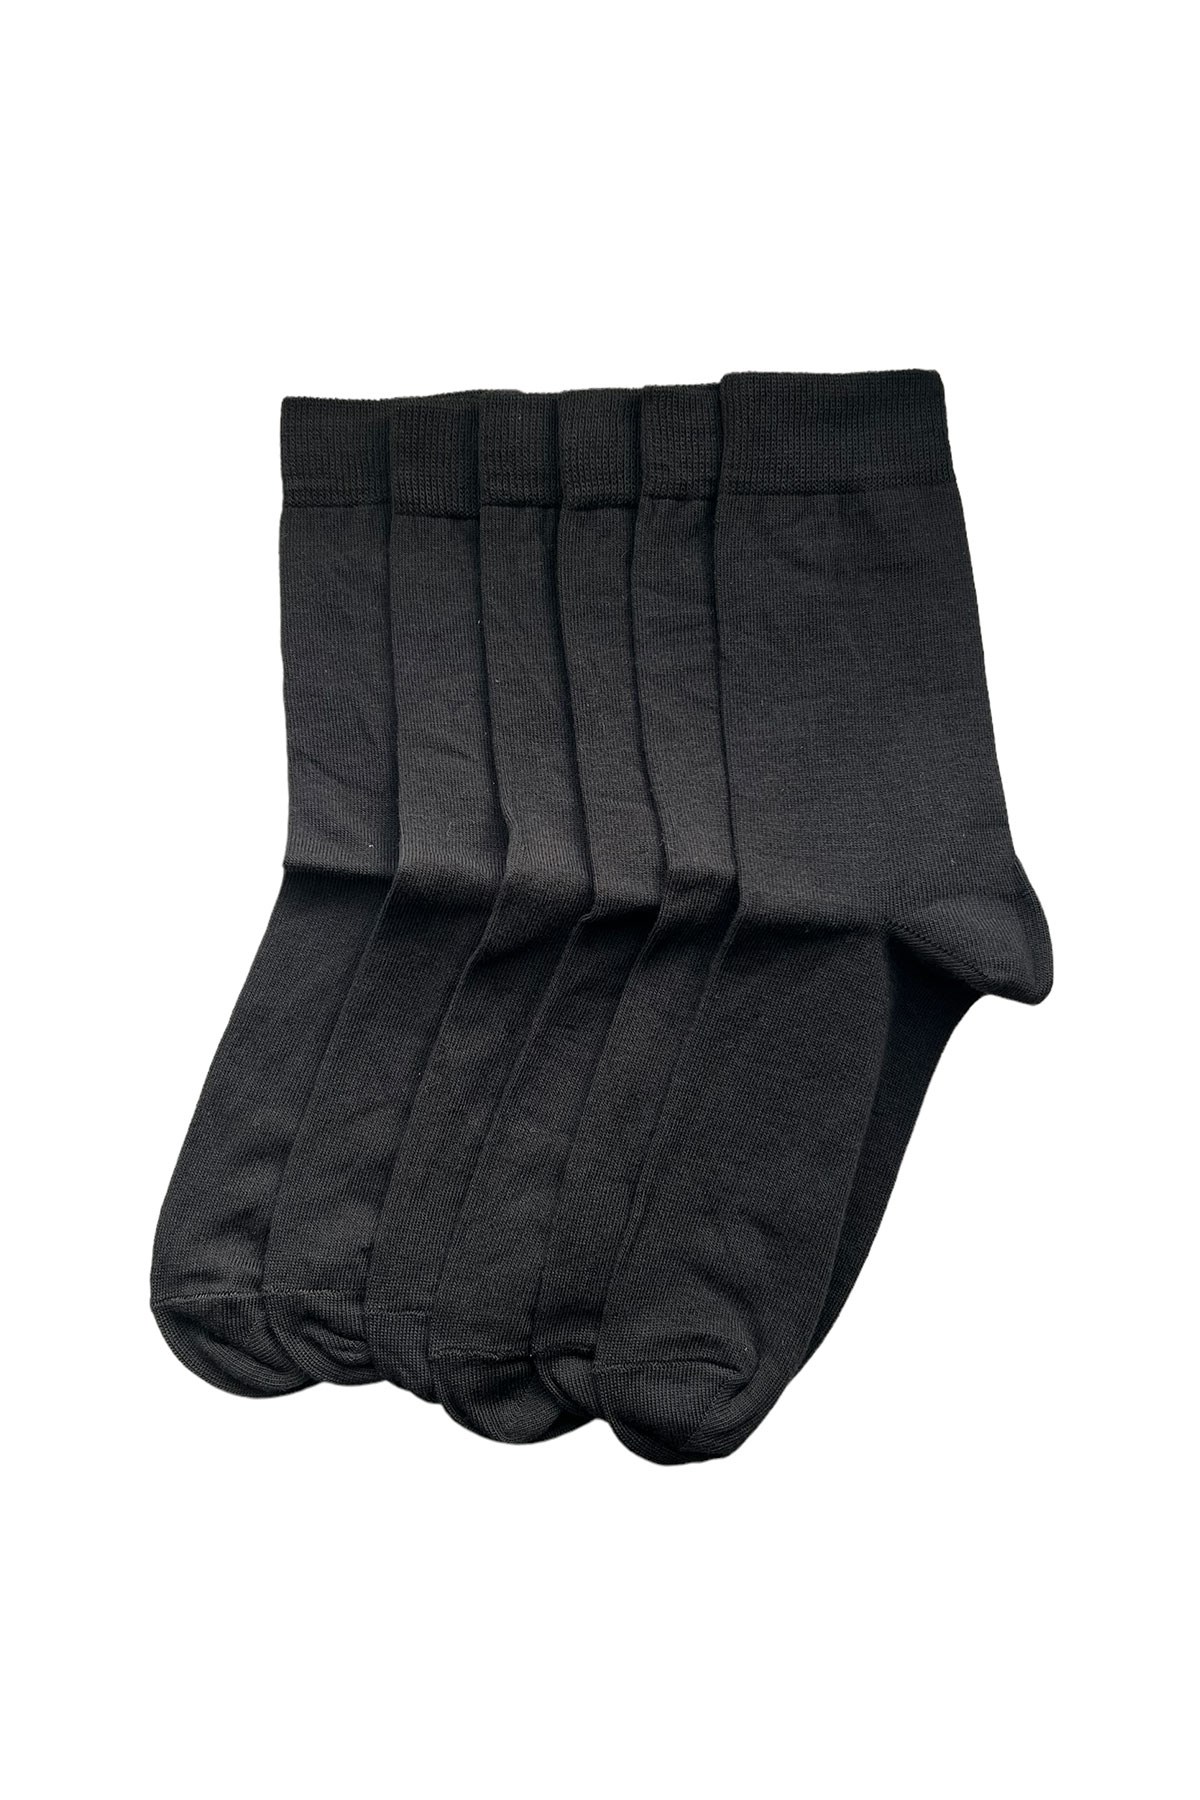 6'lı Paket Unisex Soket Çorap Desenli